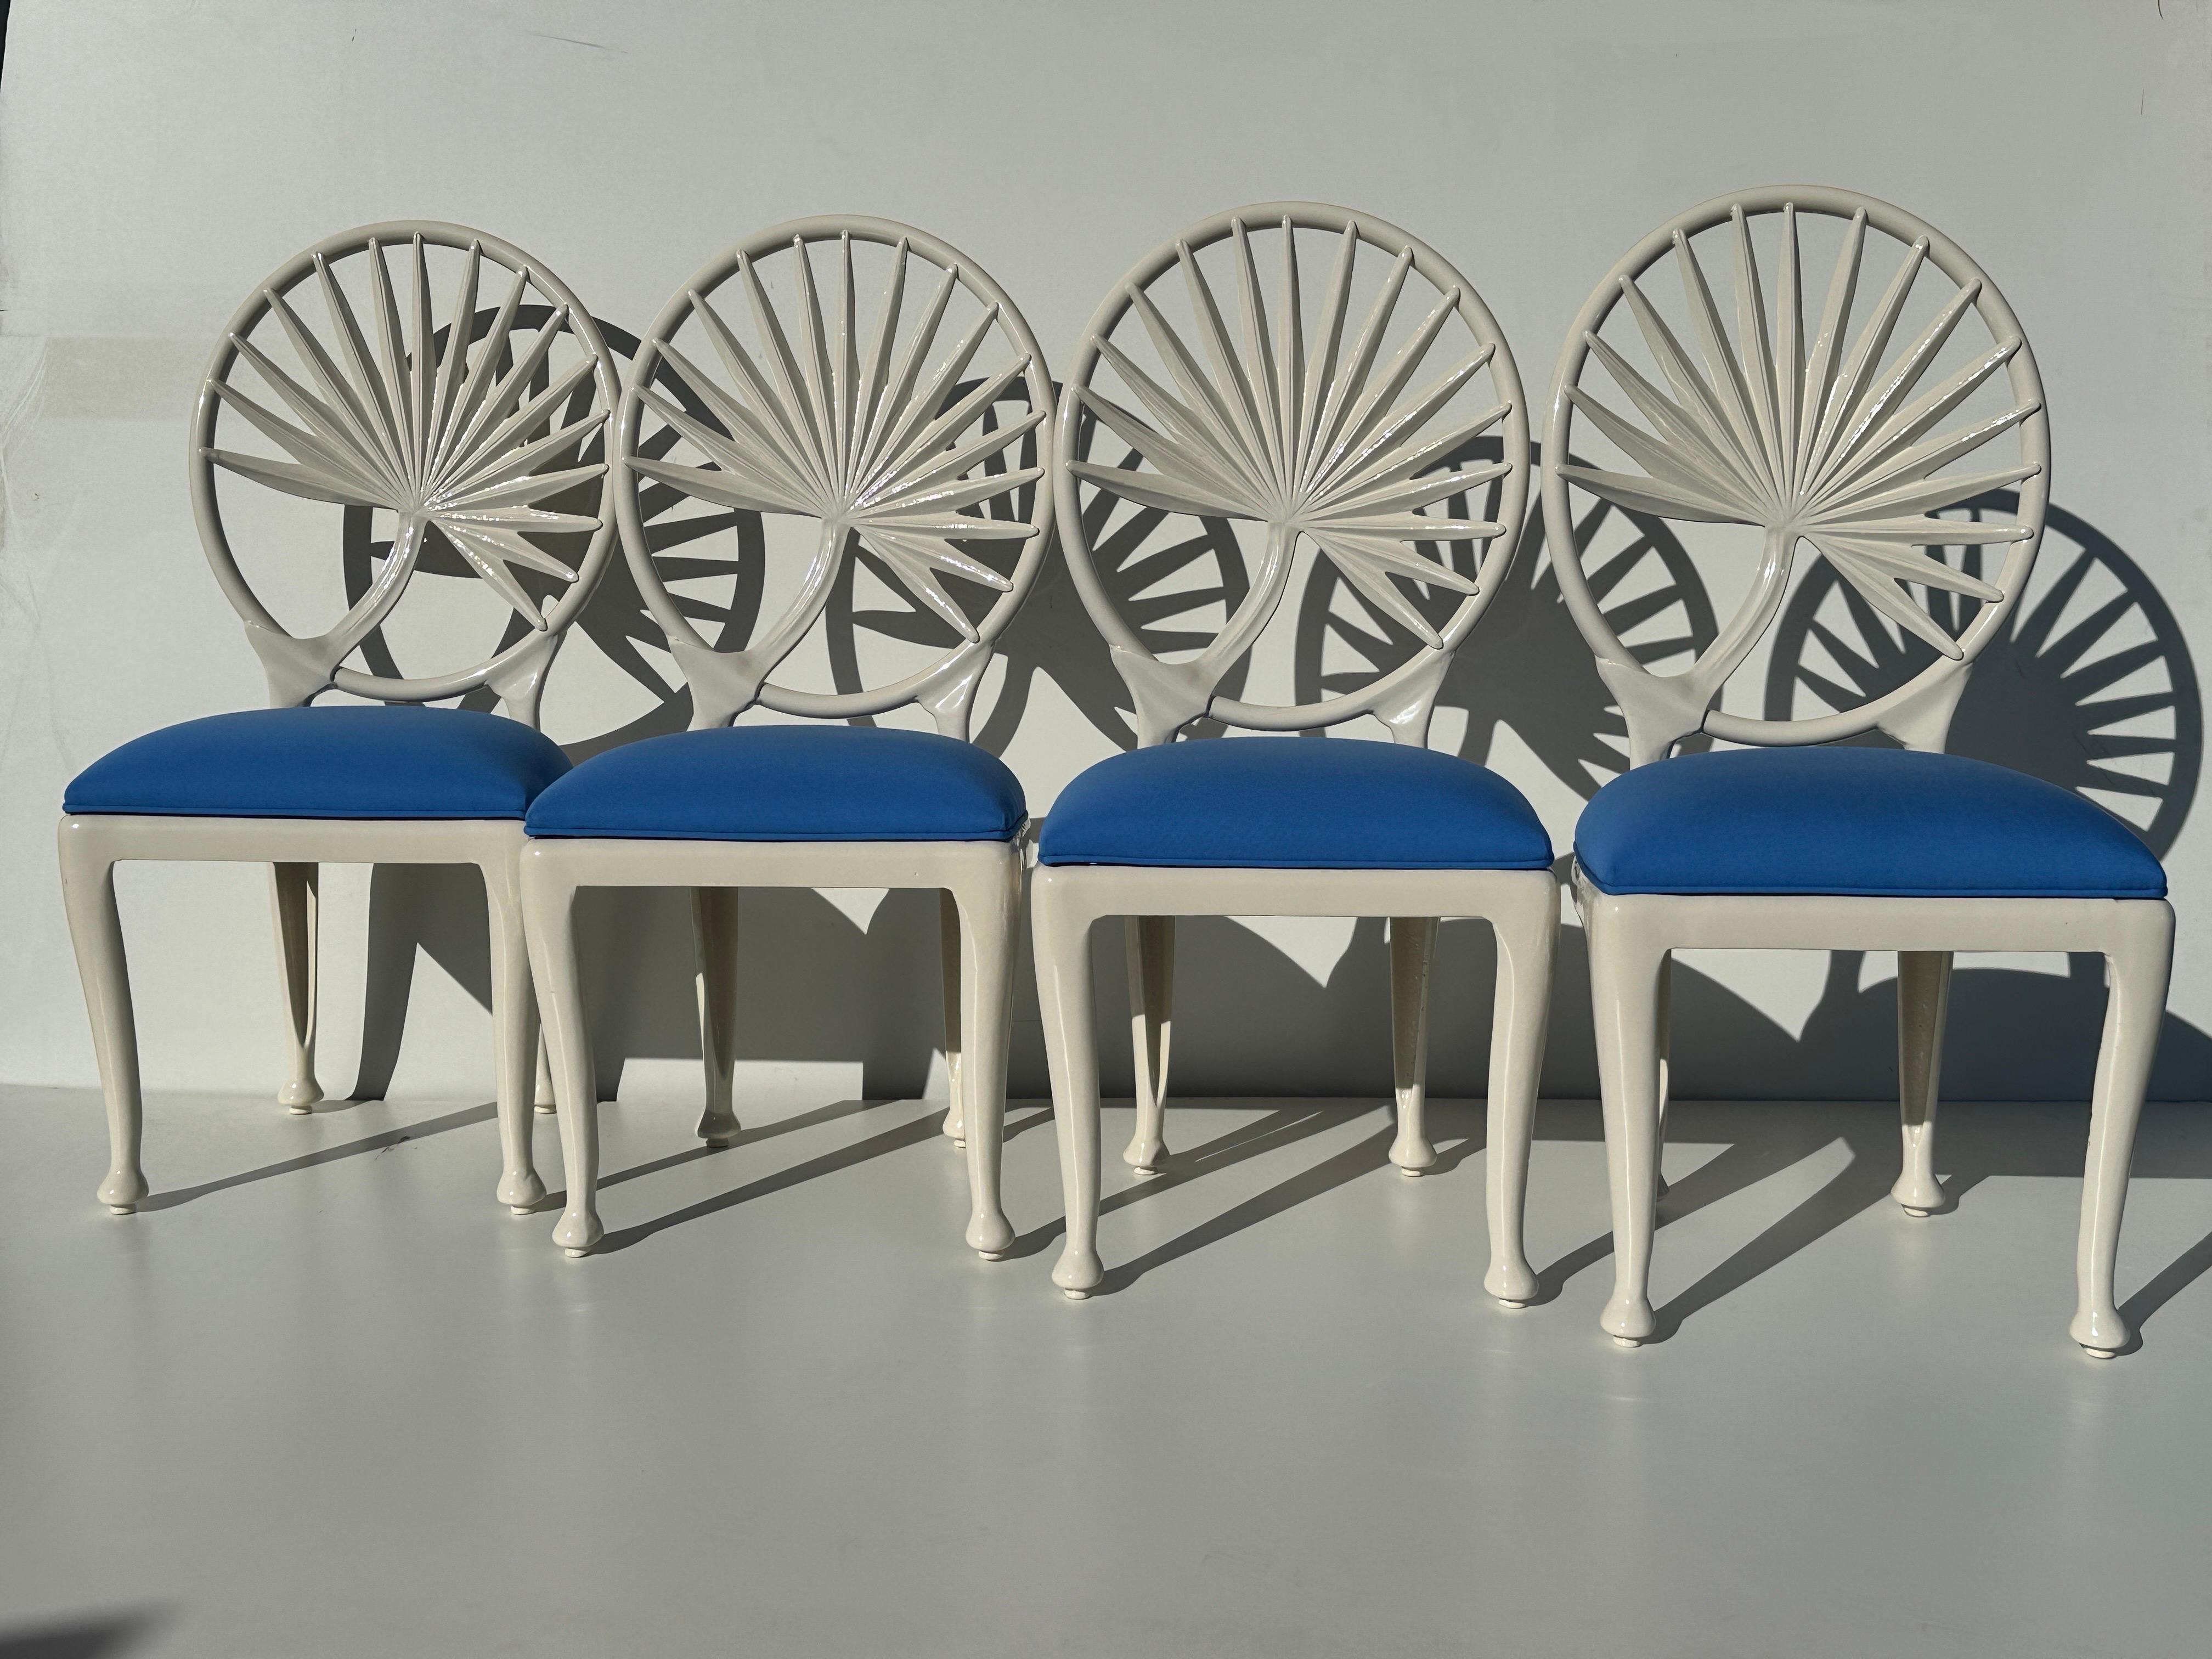 Satz von vier Aluminium-Gartenstühlen in hellcremefarbener Pulverbeschichtung mit Palmblattdesign. Die Sitze sind mit einem blauen Outdoor-Stoff gepolstert, der wasserbeständig ist und leicht neu gepolstert werden kann, um Ihrem Designthema und